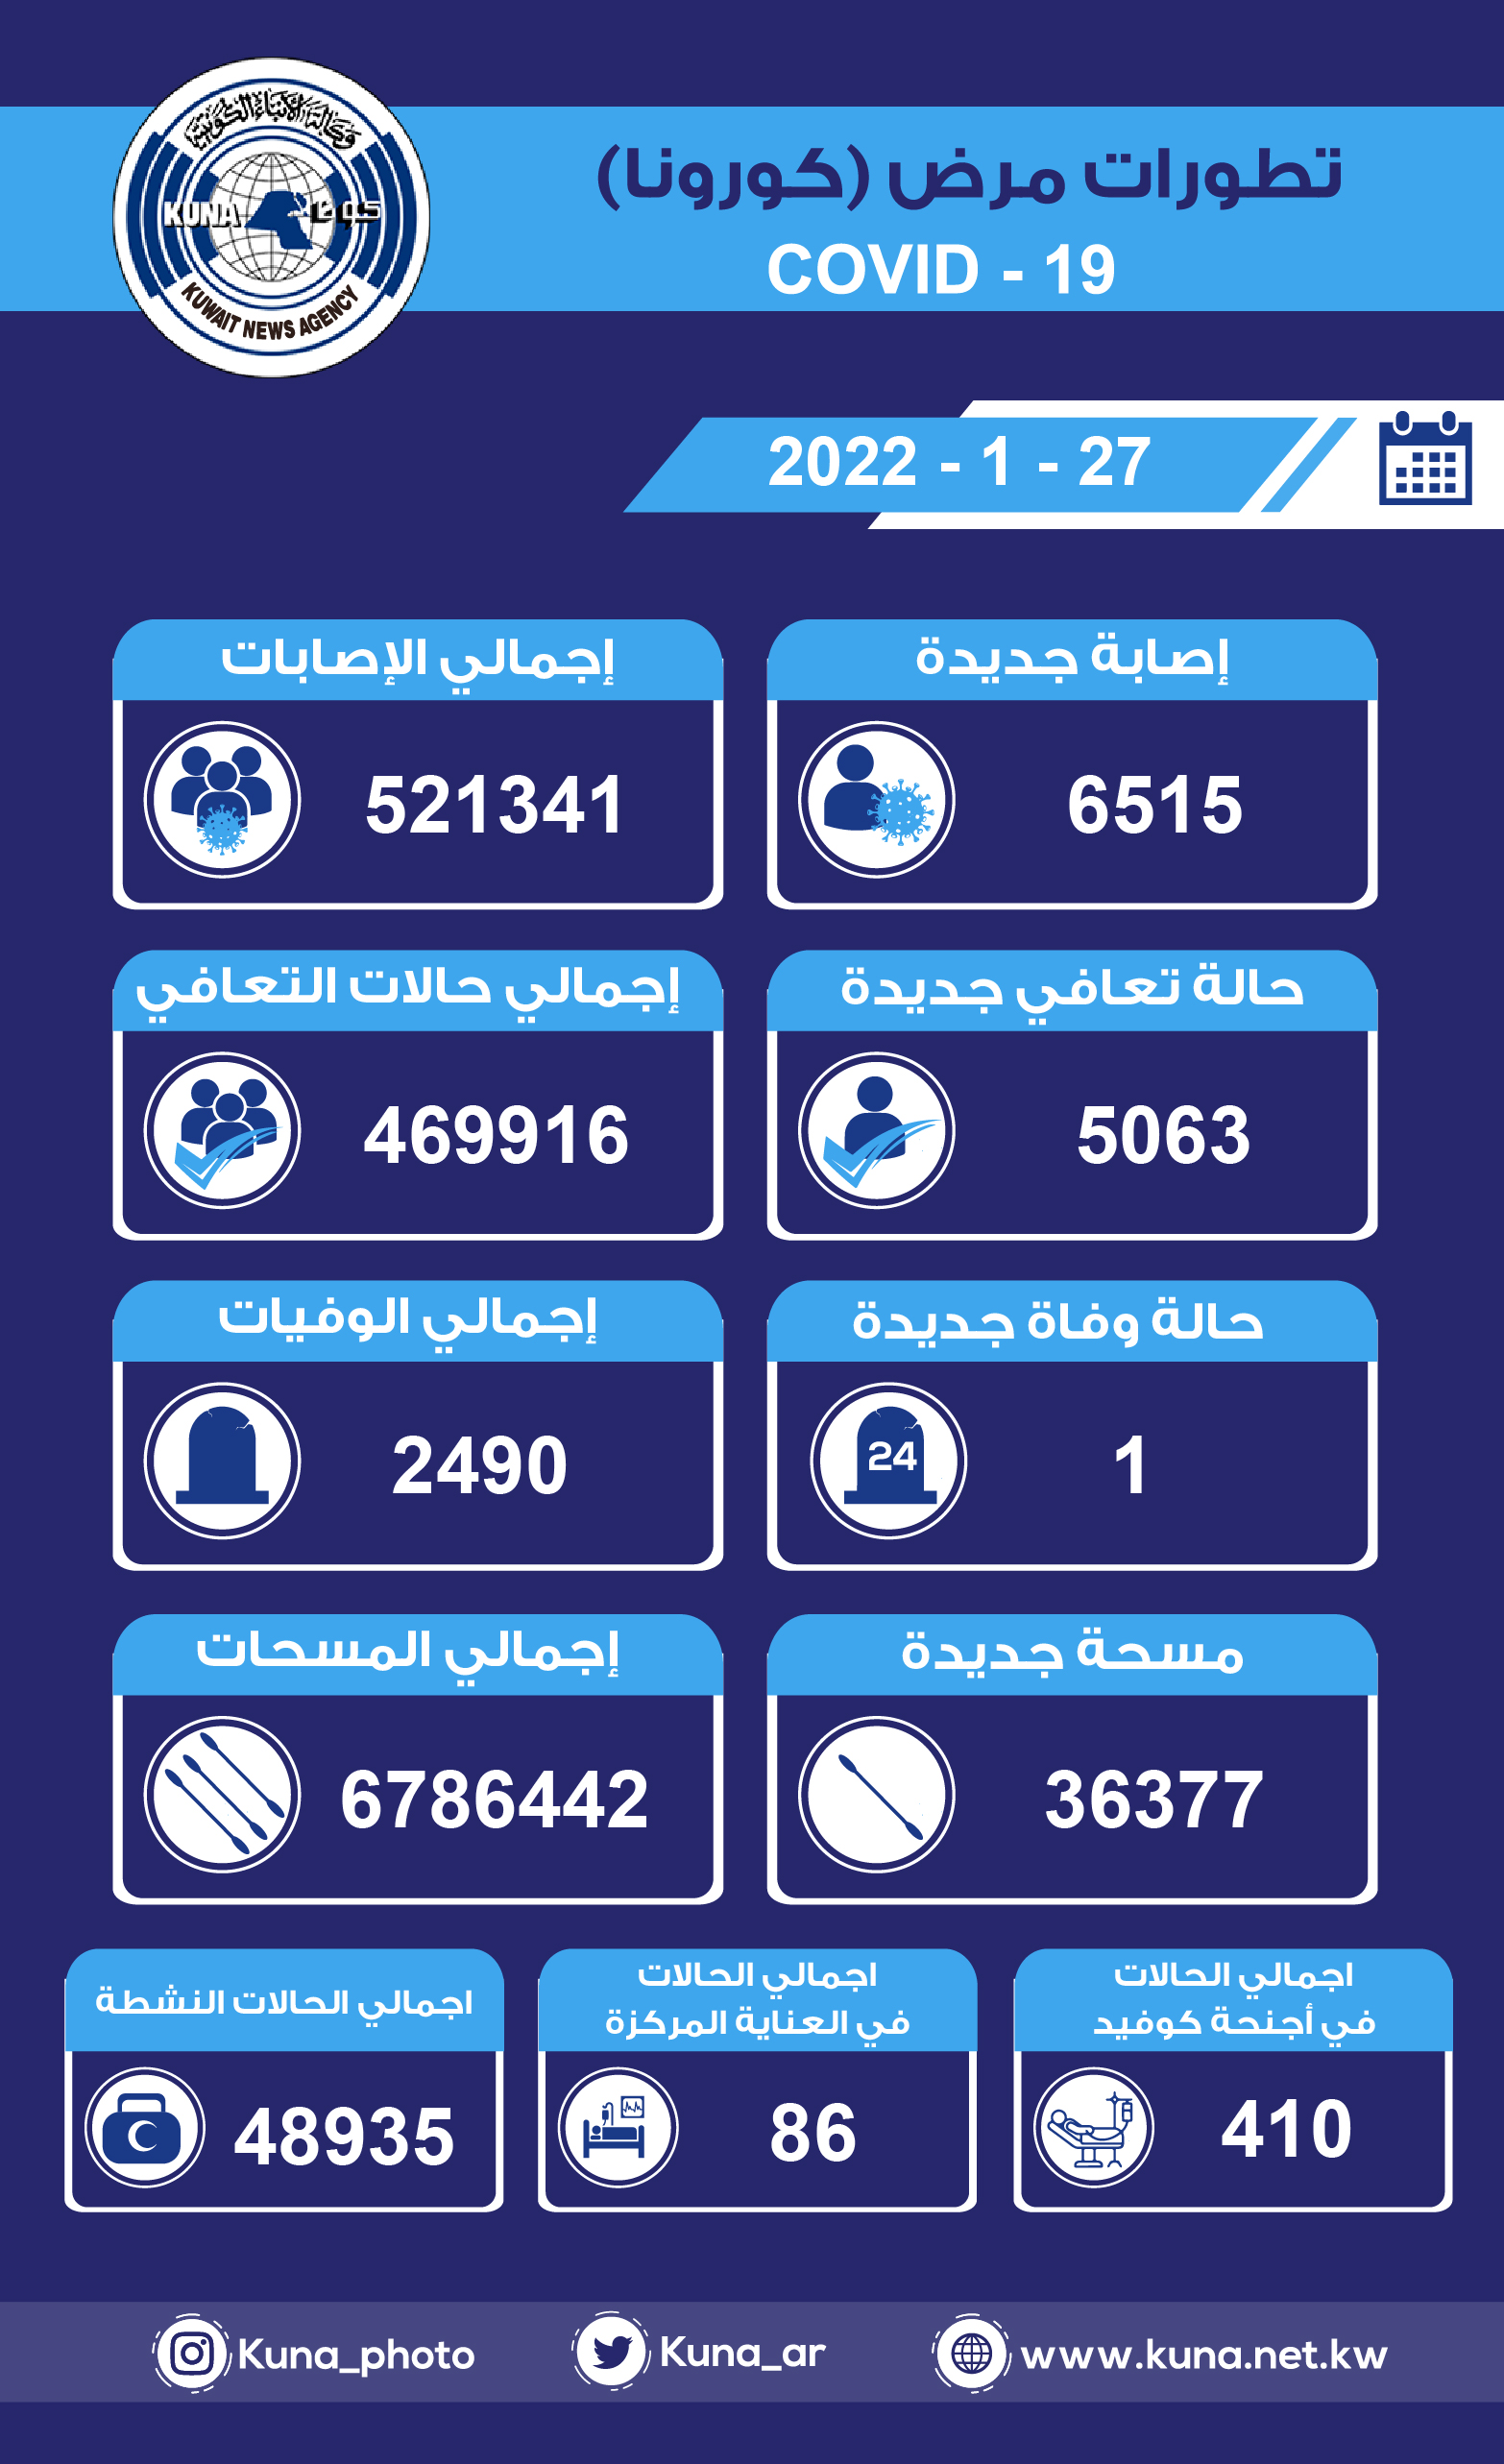 (الصحة) الكويتية: 6515 إصابة جديدة ب(كورونا) وشفاء 5063 وتسجيل حالة وفاة خلال الساعات ال24 الماضية                                                                                                                                                        